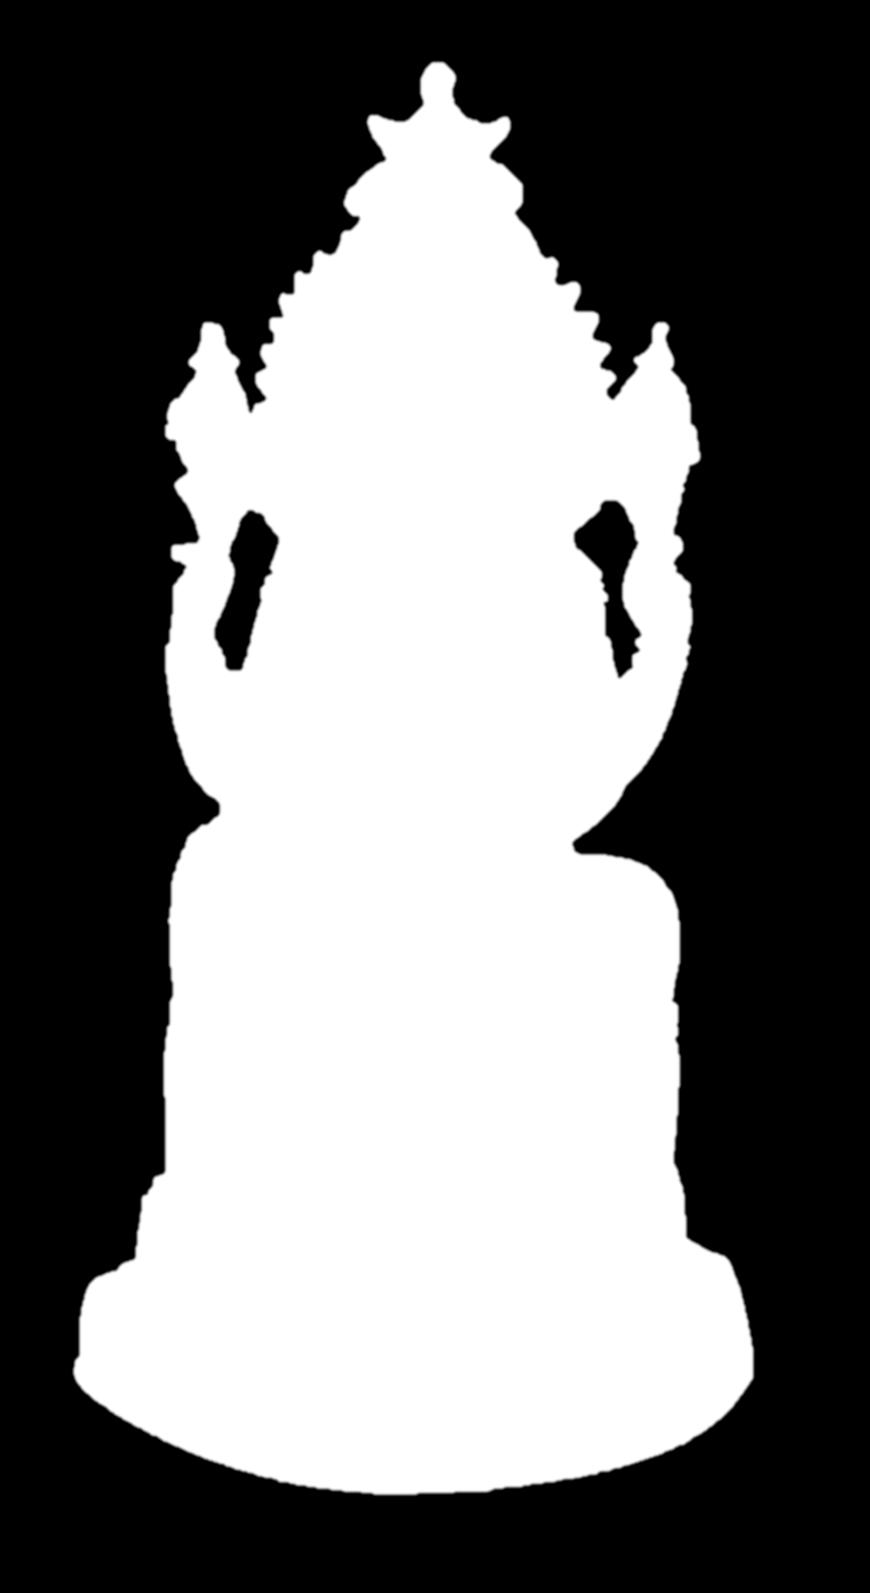 Il culto di Ganesha è molto diffuso, anche al